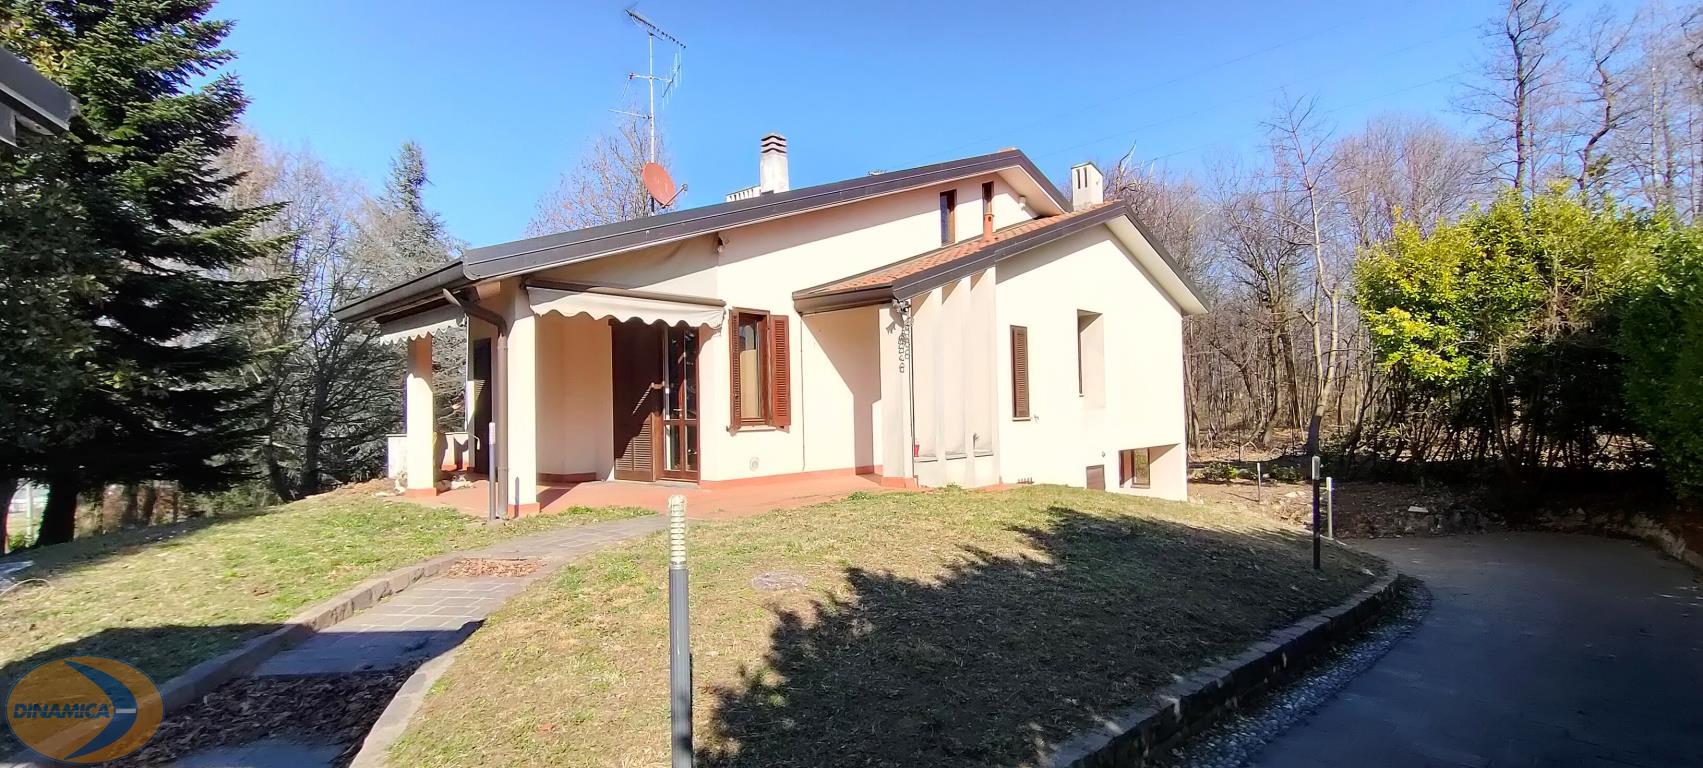 Villa in vendita a Barzago, 5 locali, zona Località: Residenziale, prezzo € 560.000 | PortaleAgenzieImmobiliari.it